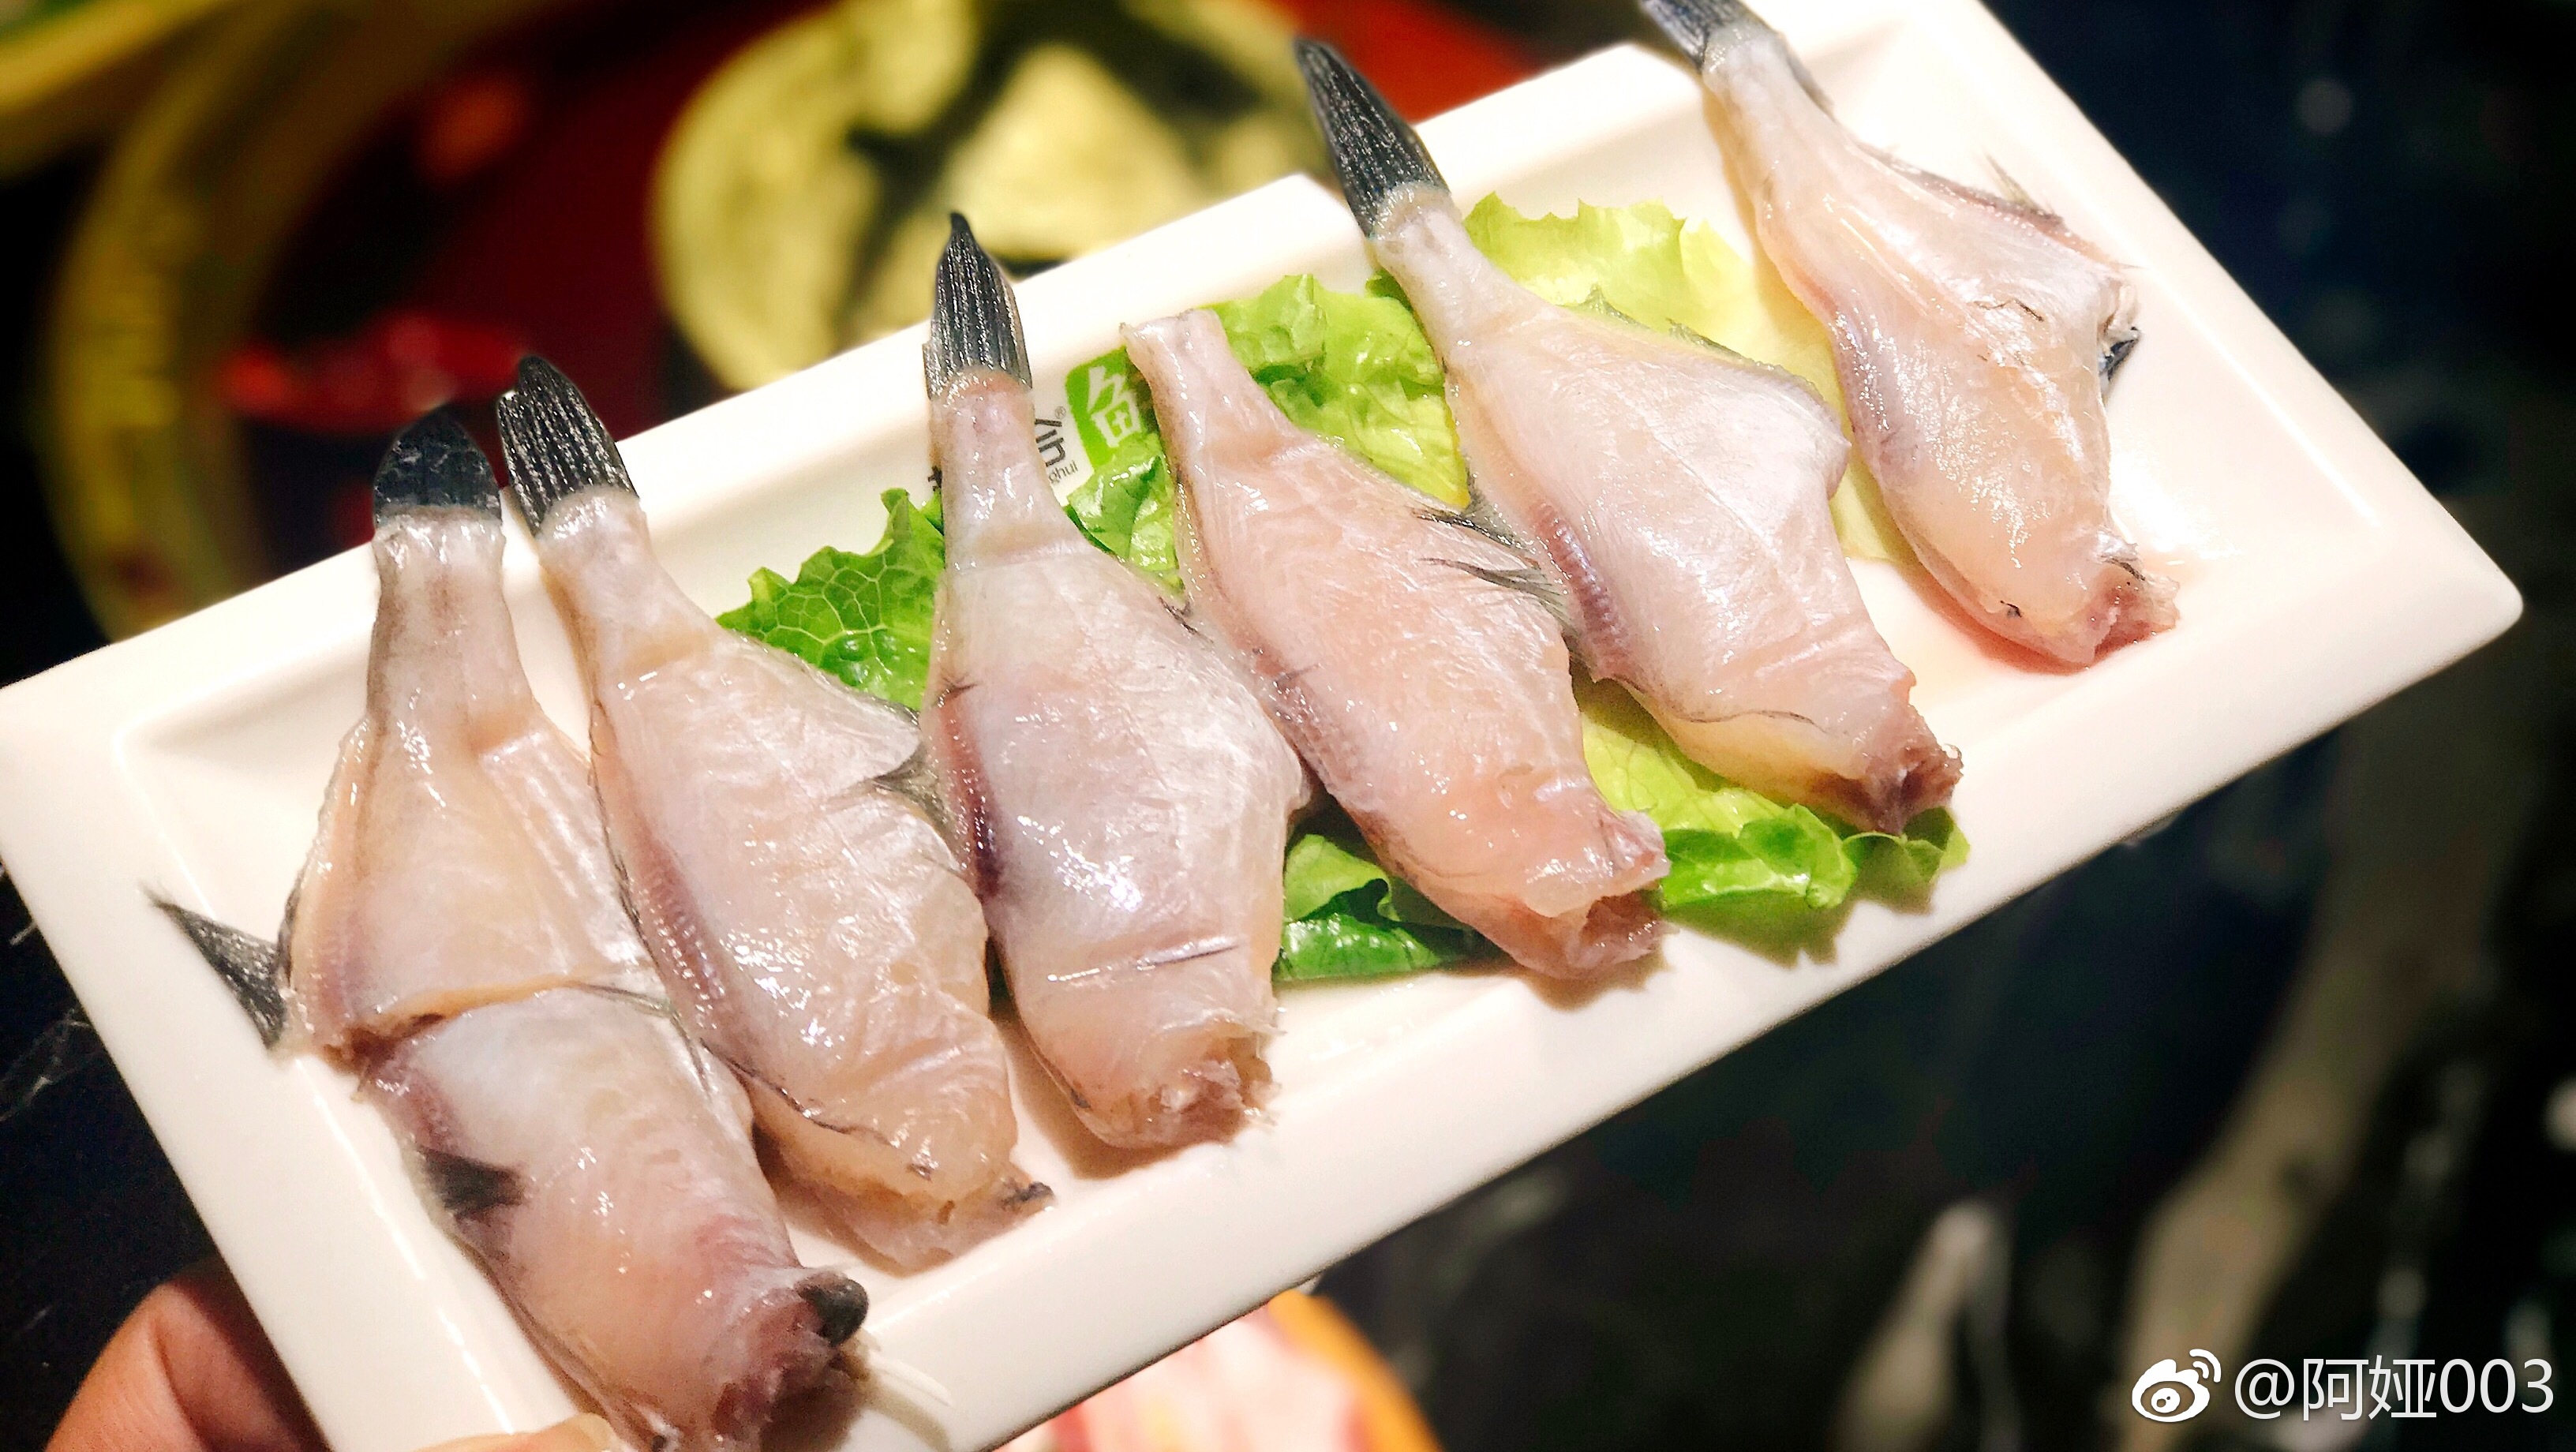 耗儿鱼从来都是和火锅是绝配,何况是鲜耗儿鱼,个头匀称,肉质细嫩,因为